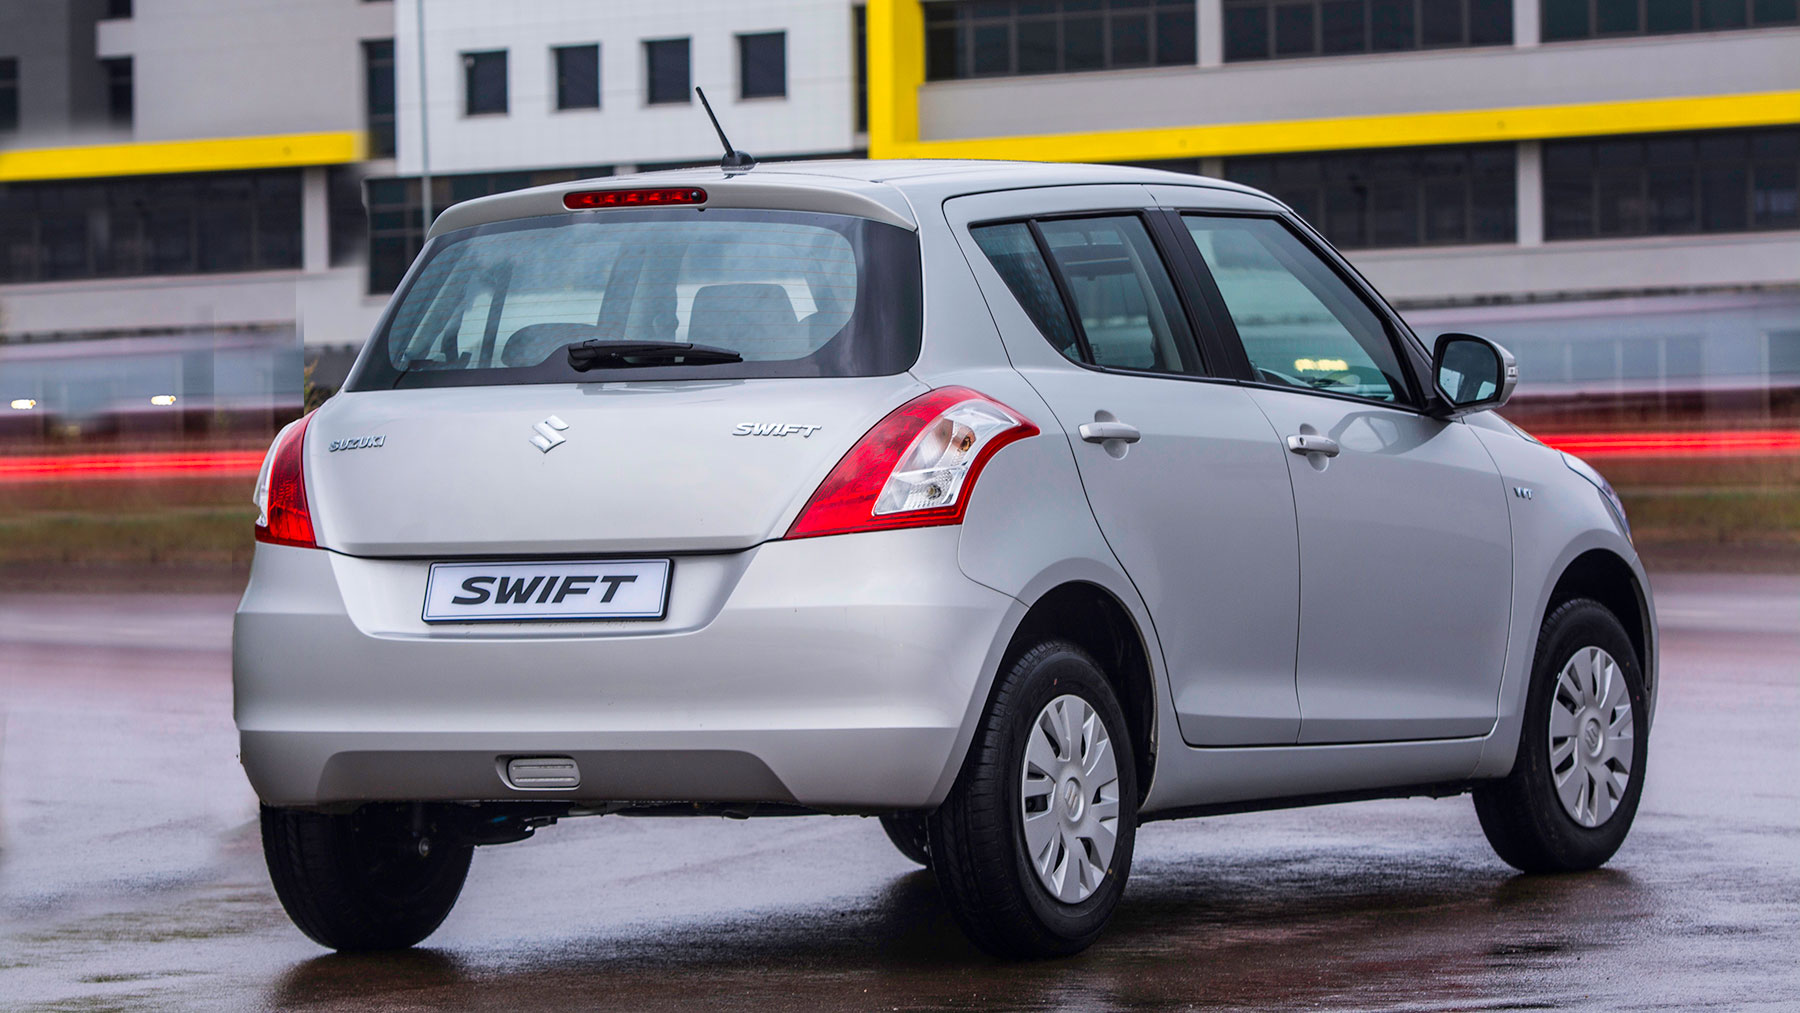 Suzuki Swift 2015 juvenil, moderno y a precio competitivo